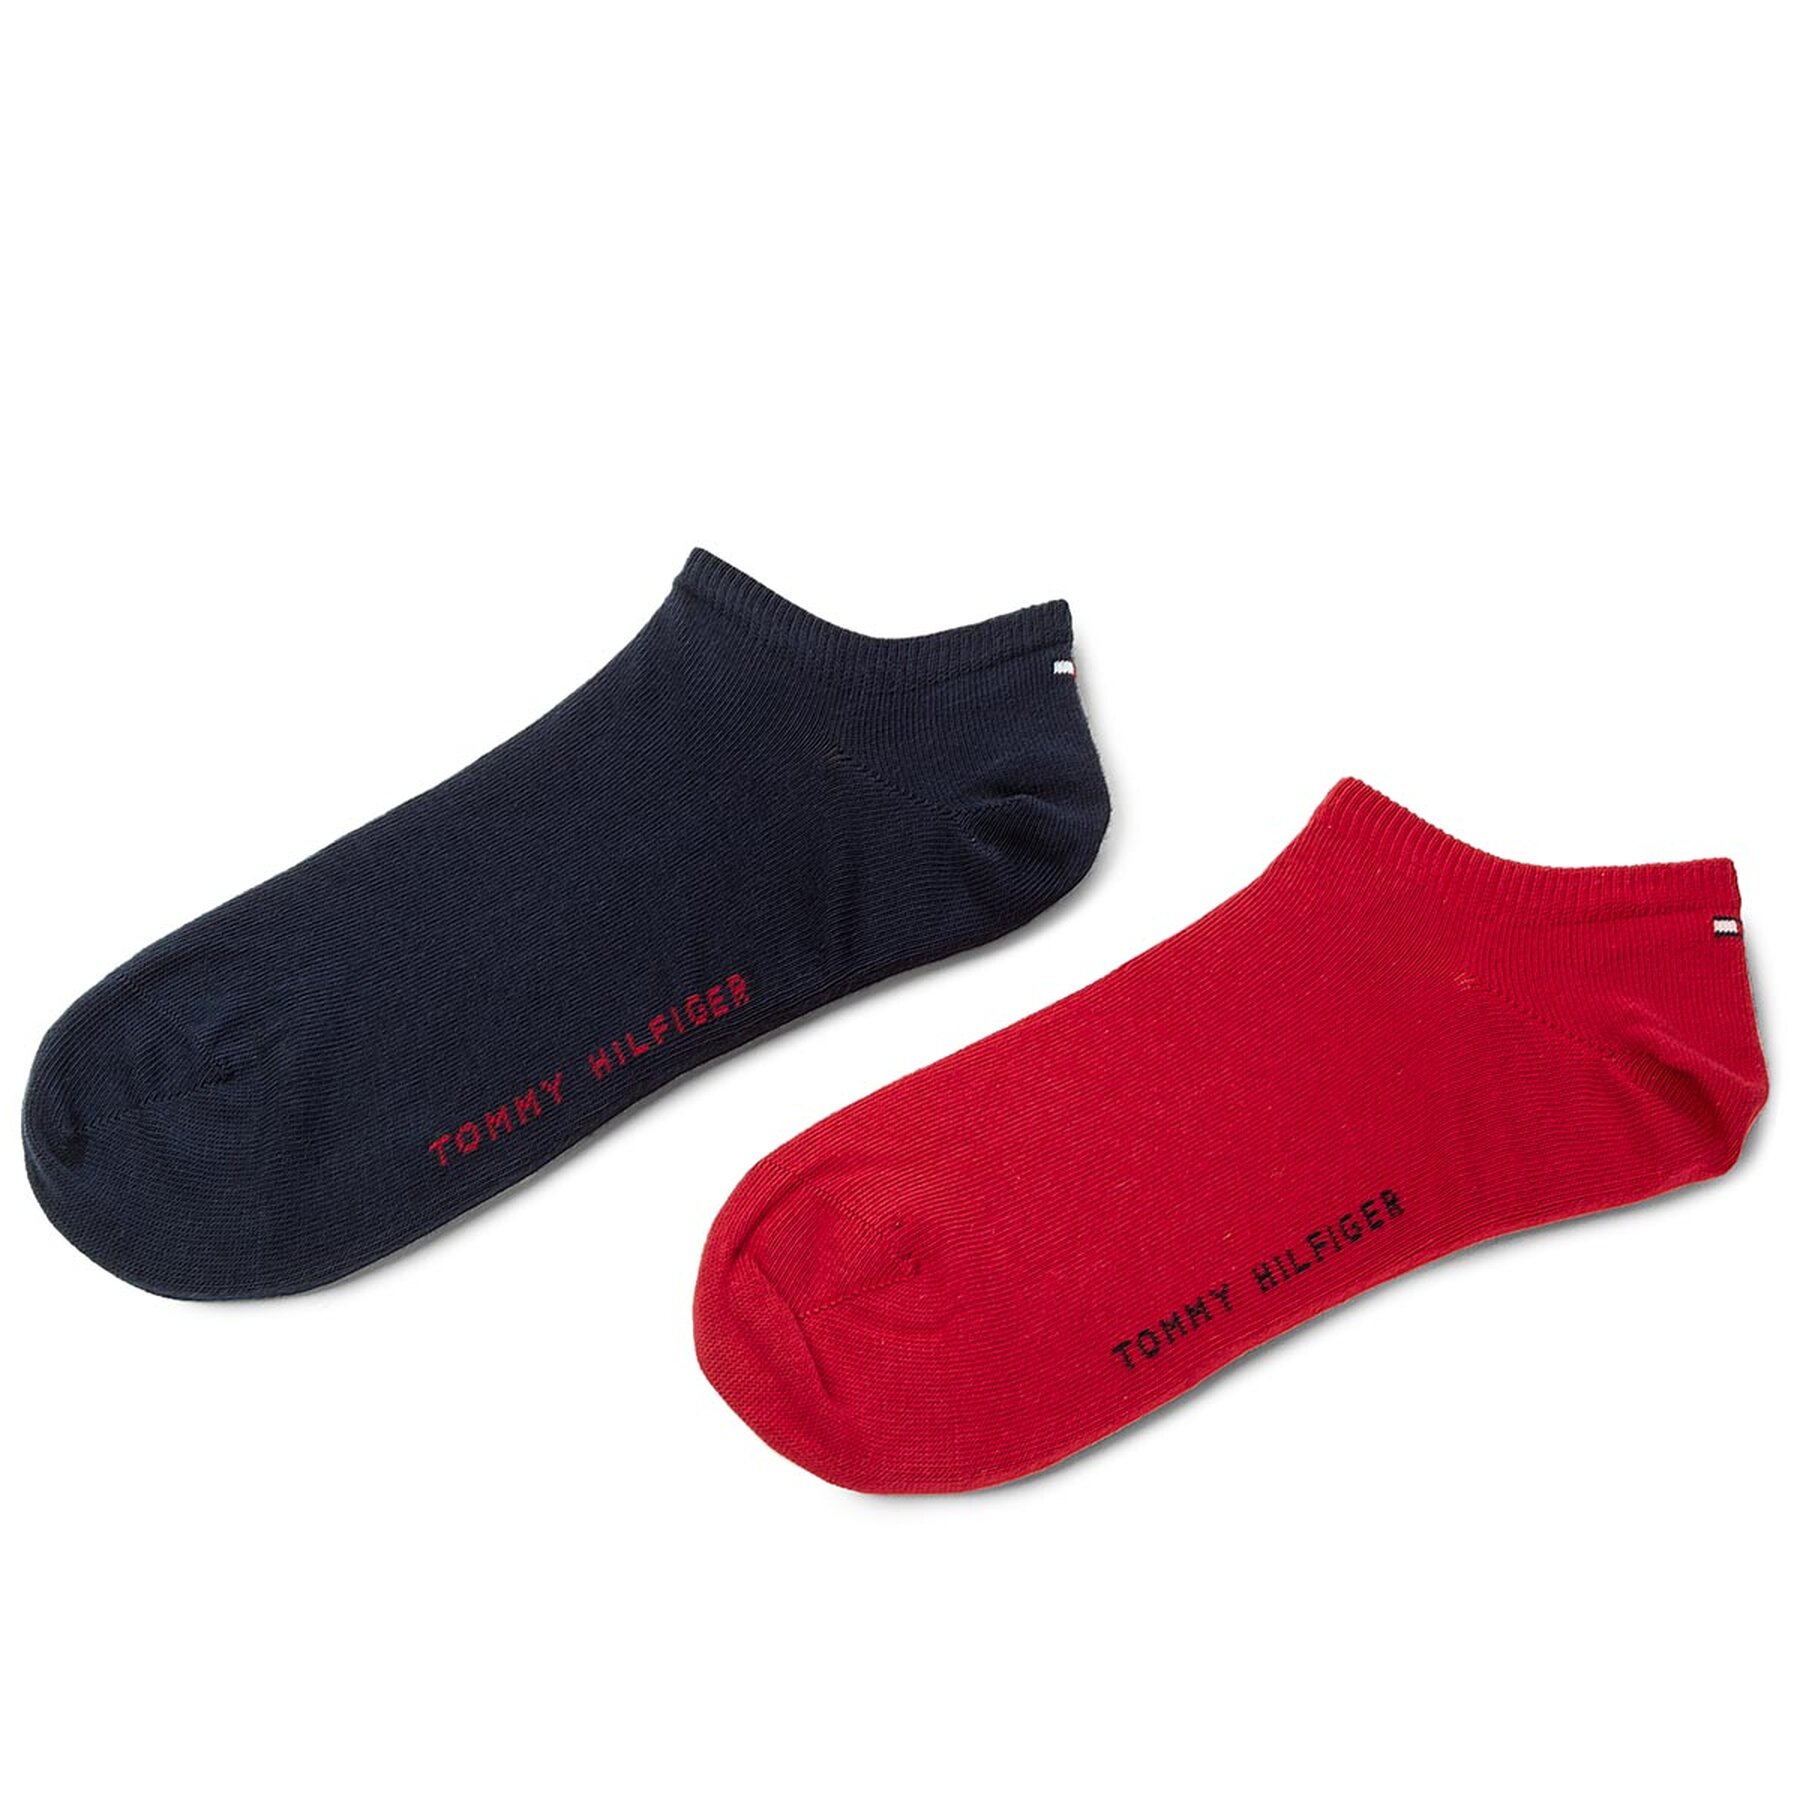 Comprar en oferta Tommy Hilfiger Socks (342023001) red/black